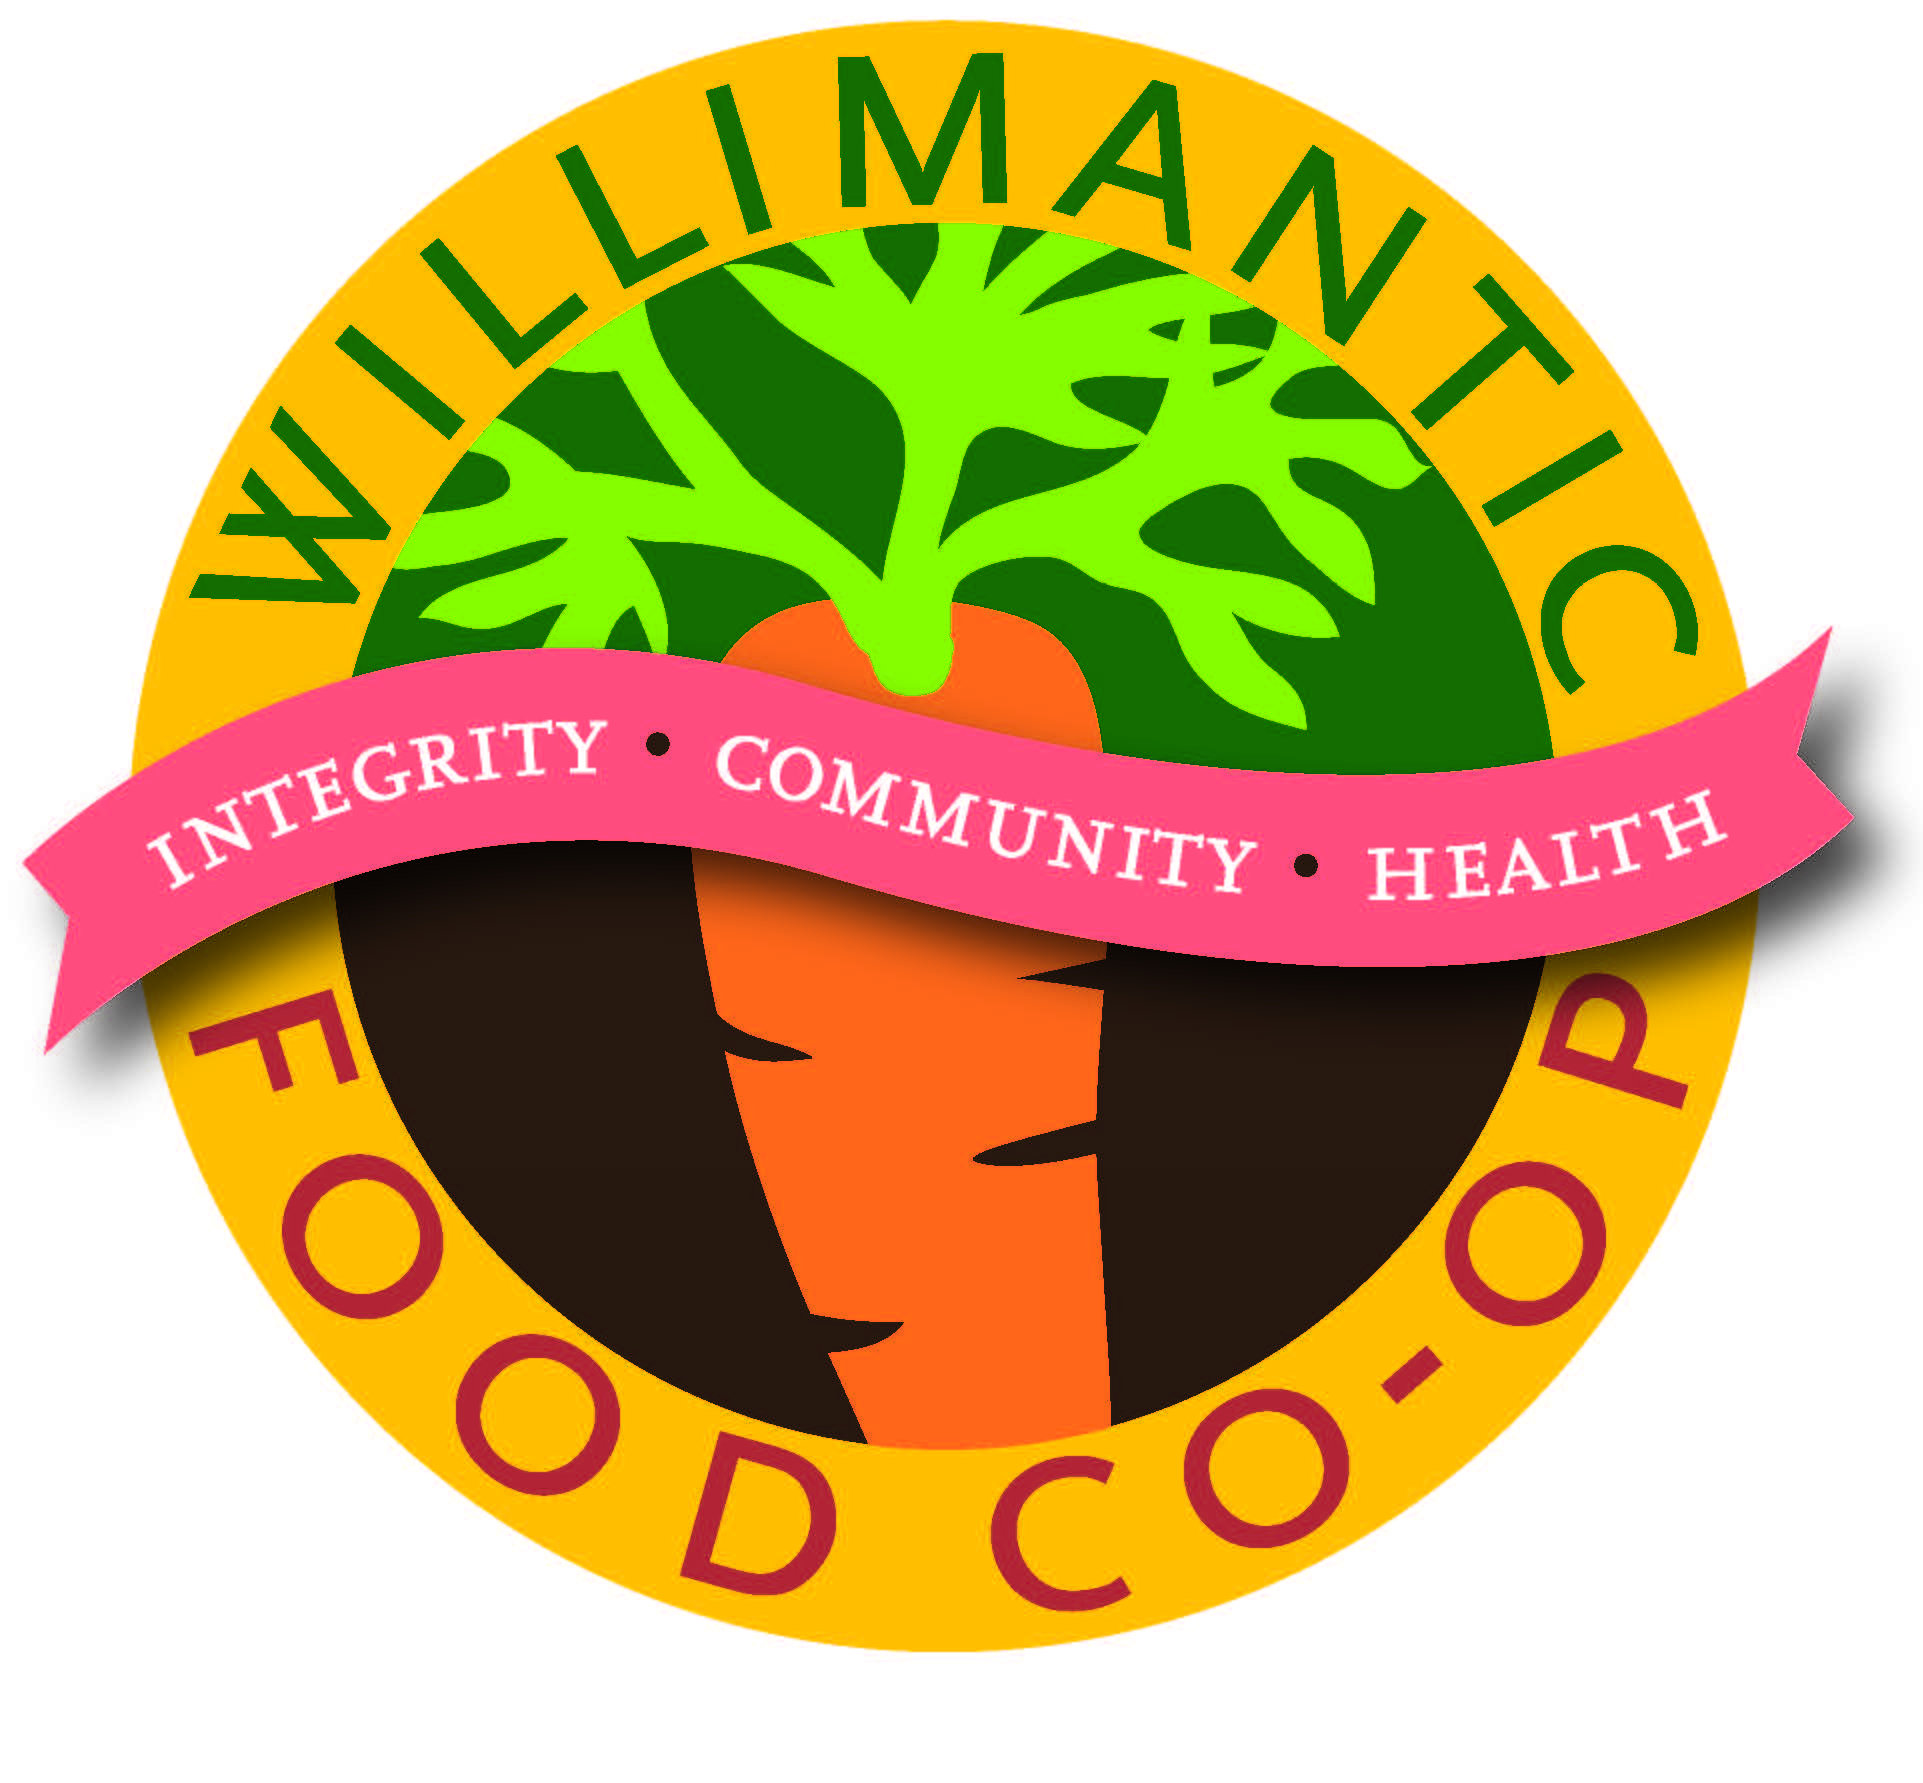 Willimantic Food Co-op